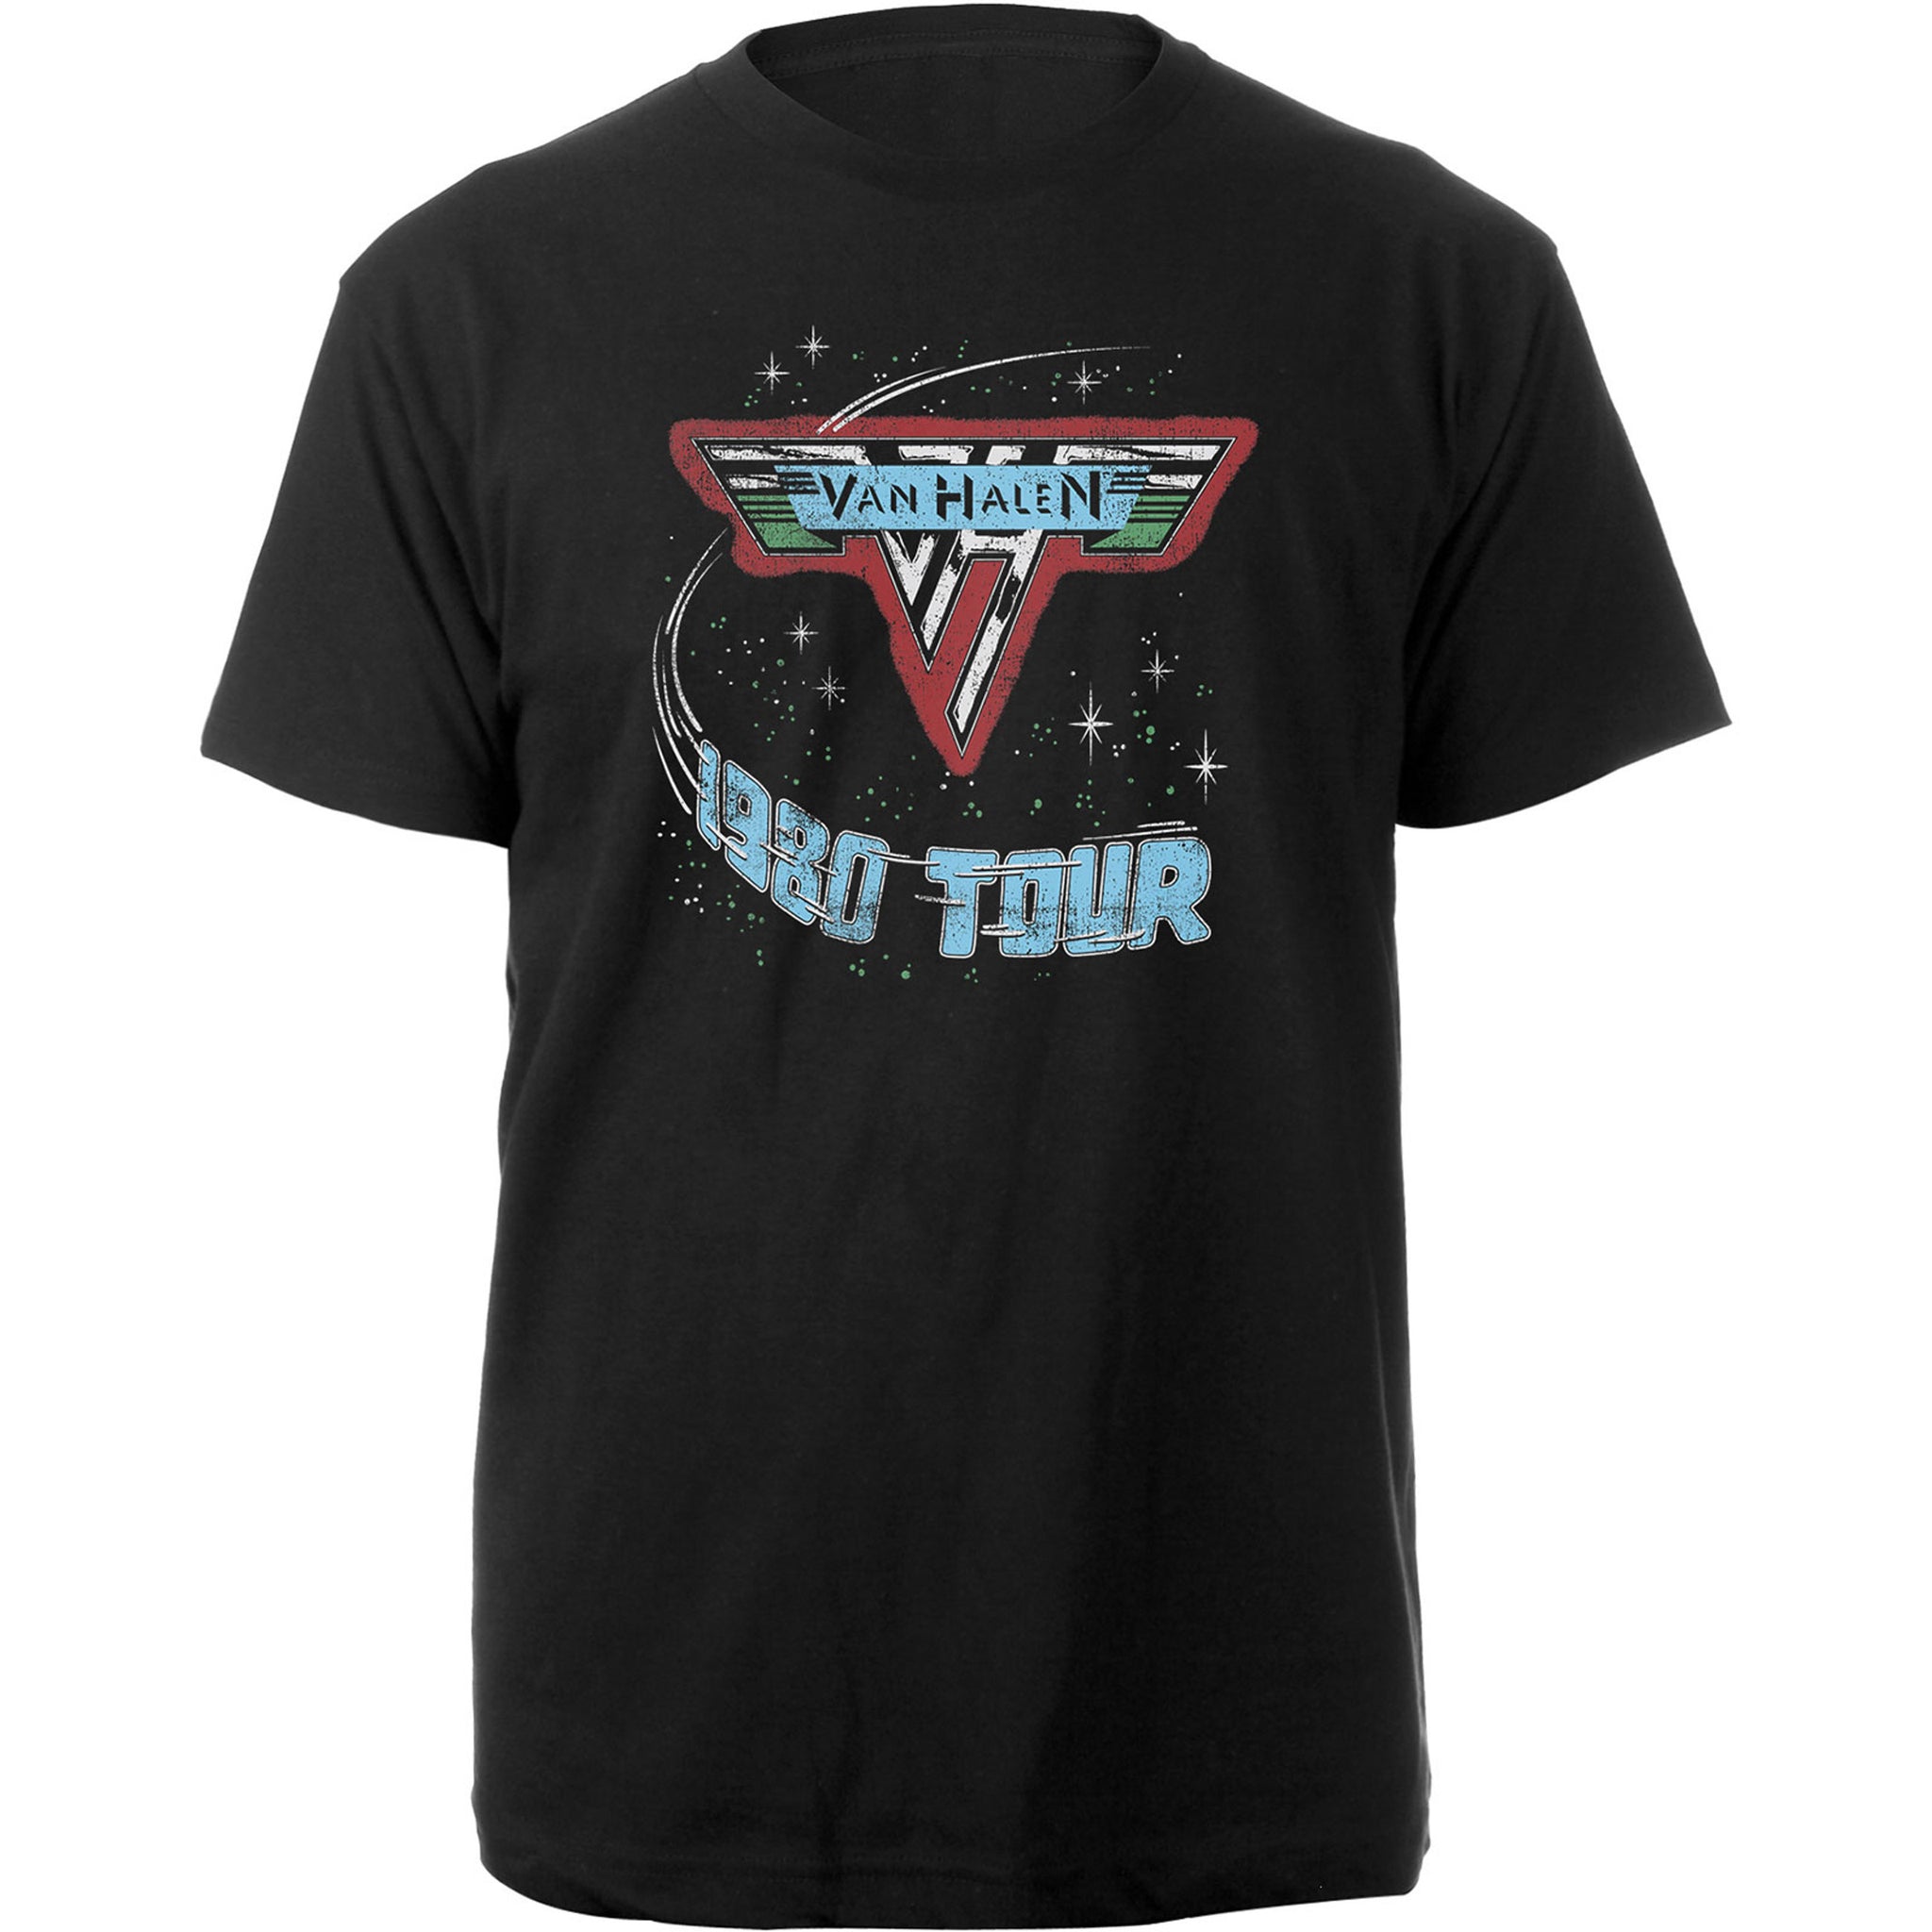 Van Halen 1980 Tour Tee